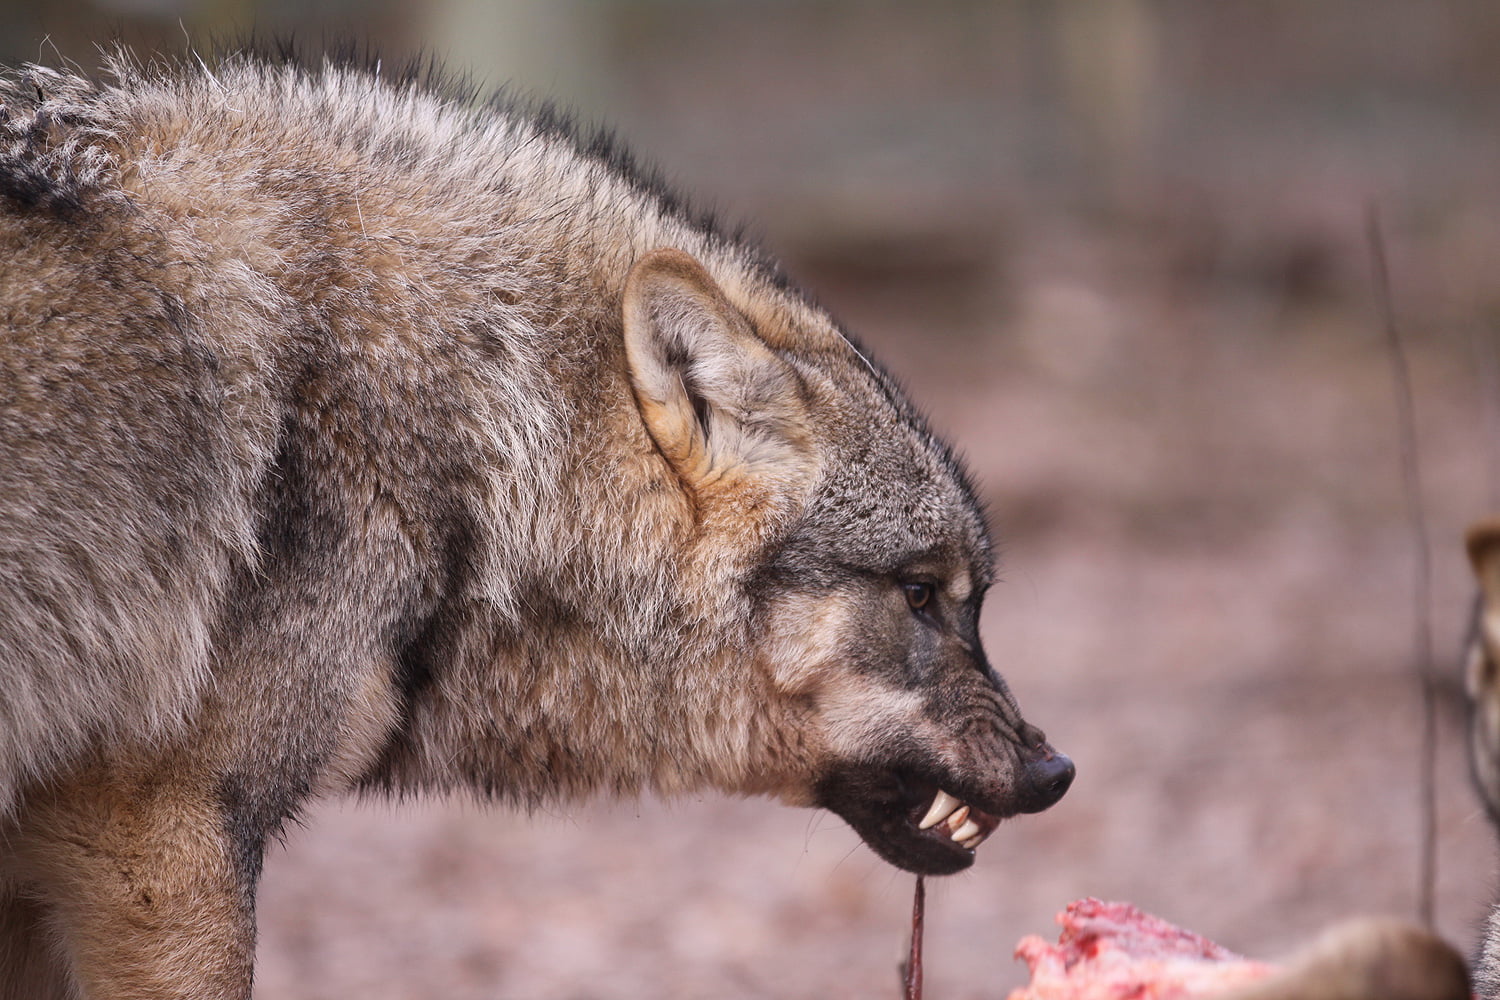 Wolfcenter Woelfe Zoo Wildpark Tiergehege Frank Fass Verhaltensauffälligkeit Aggression Habituiert Tollwut